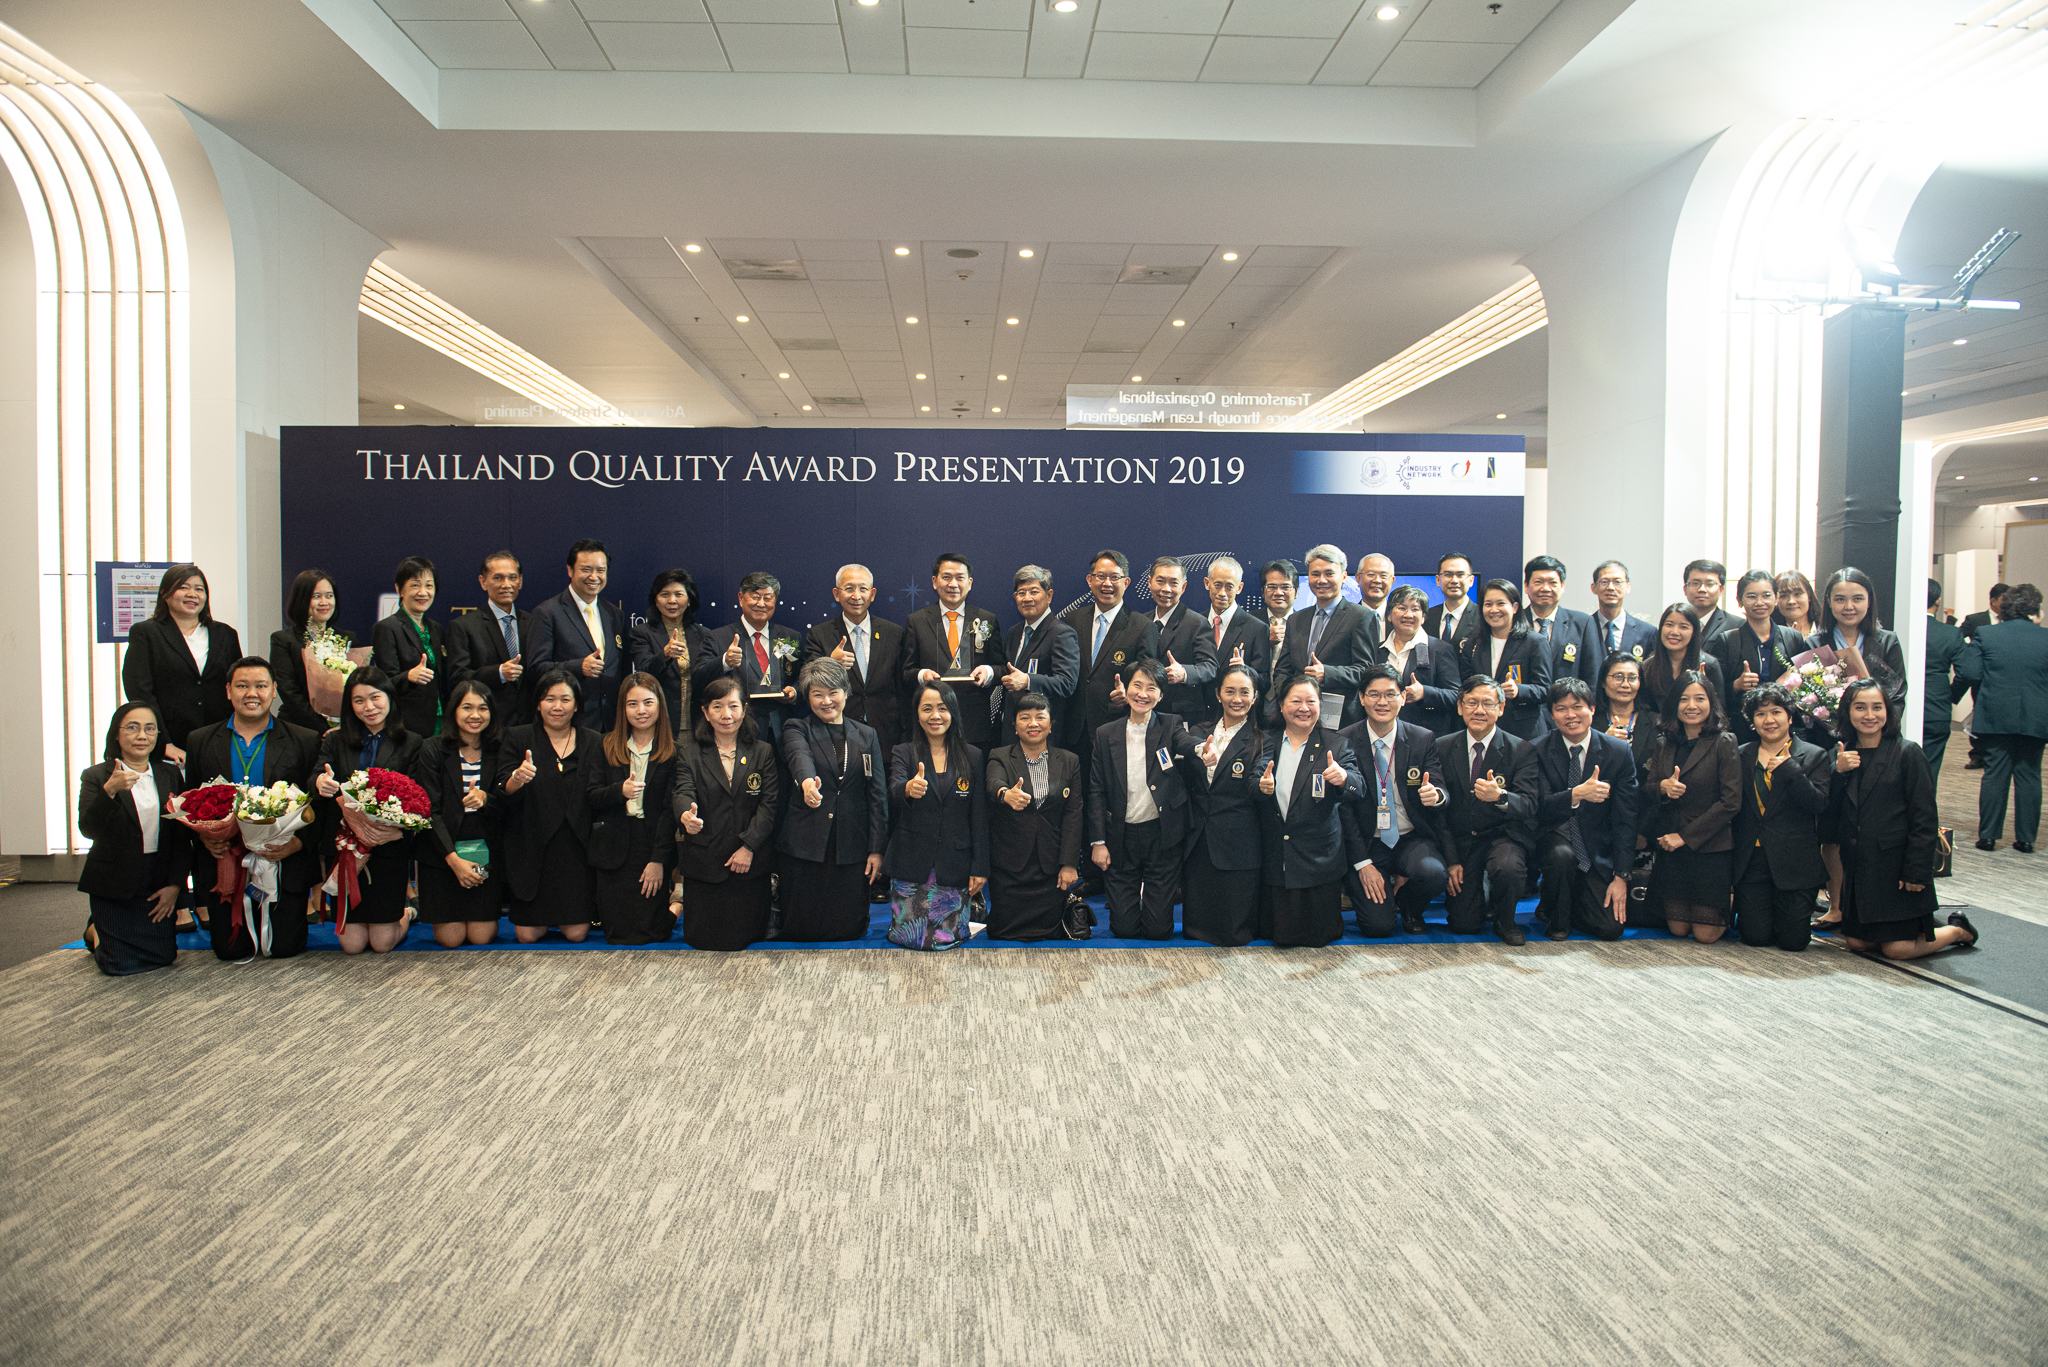 คณะแพทยศาสตร์โรงพยาบาลรามาธิบดี มหาวิทยาลัยมหิดล ได้รับรางวัลการบริหารสู่ความเป็นเลิศ (Thailand Quality Class: TQC) ในงาน พิธีมอบรางวัลคุณภาพเเห่งชาติ (Thailand Quality Award: TQA) ครั้งที่ 18 ประจำปี 2562